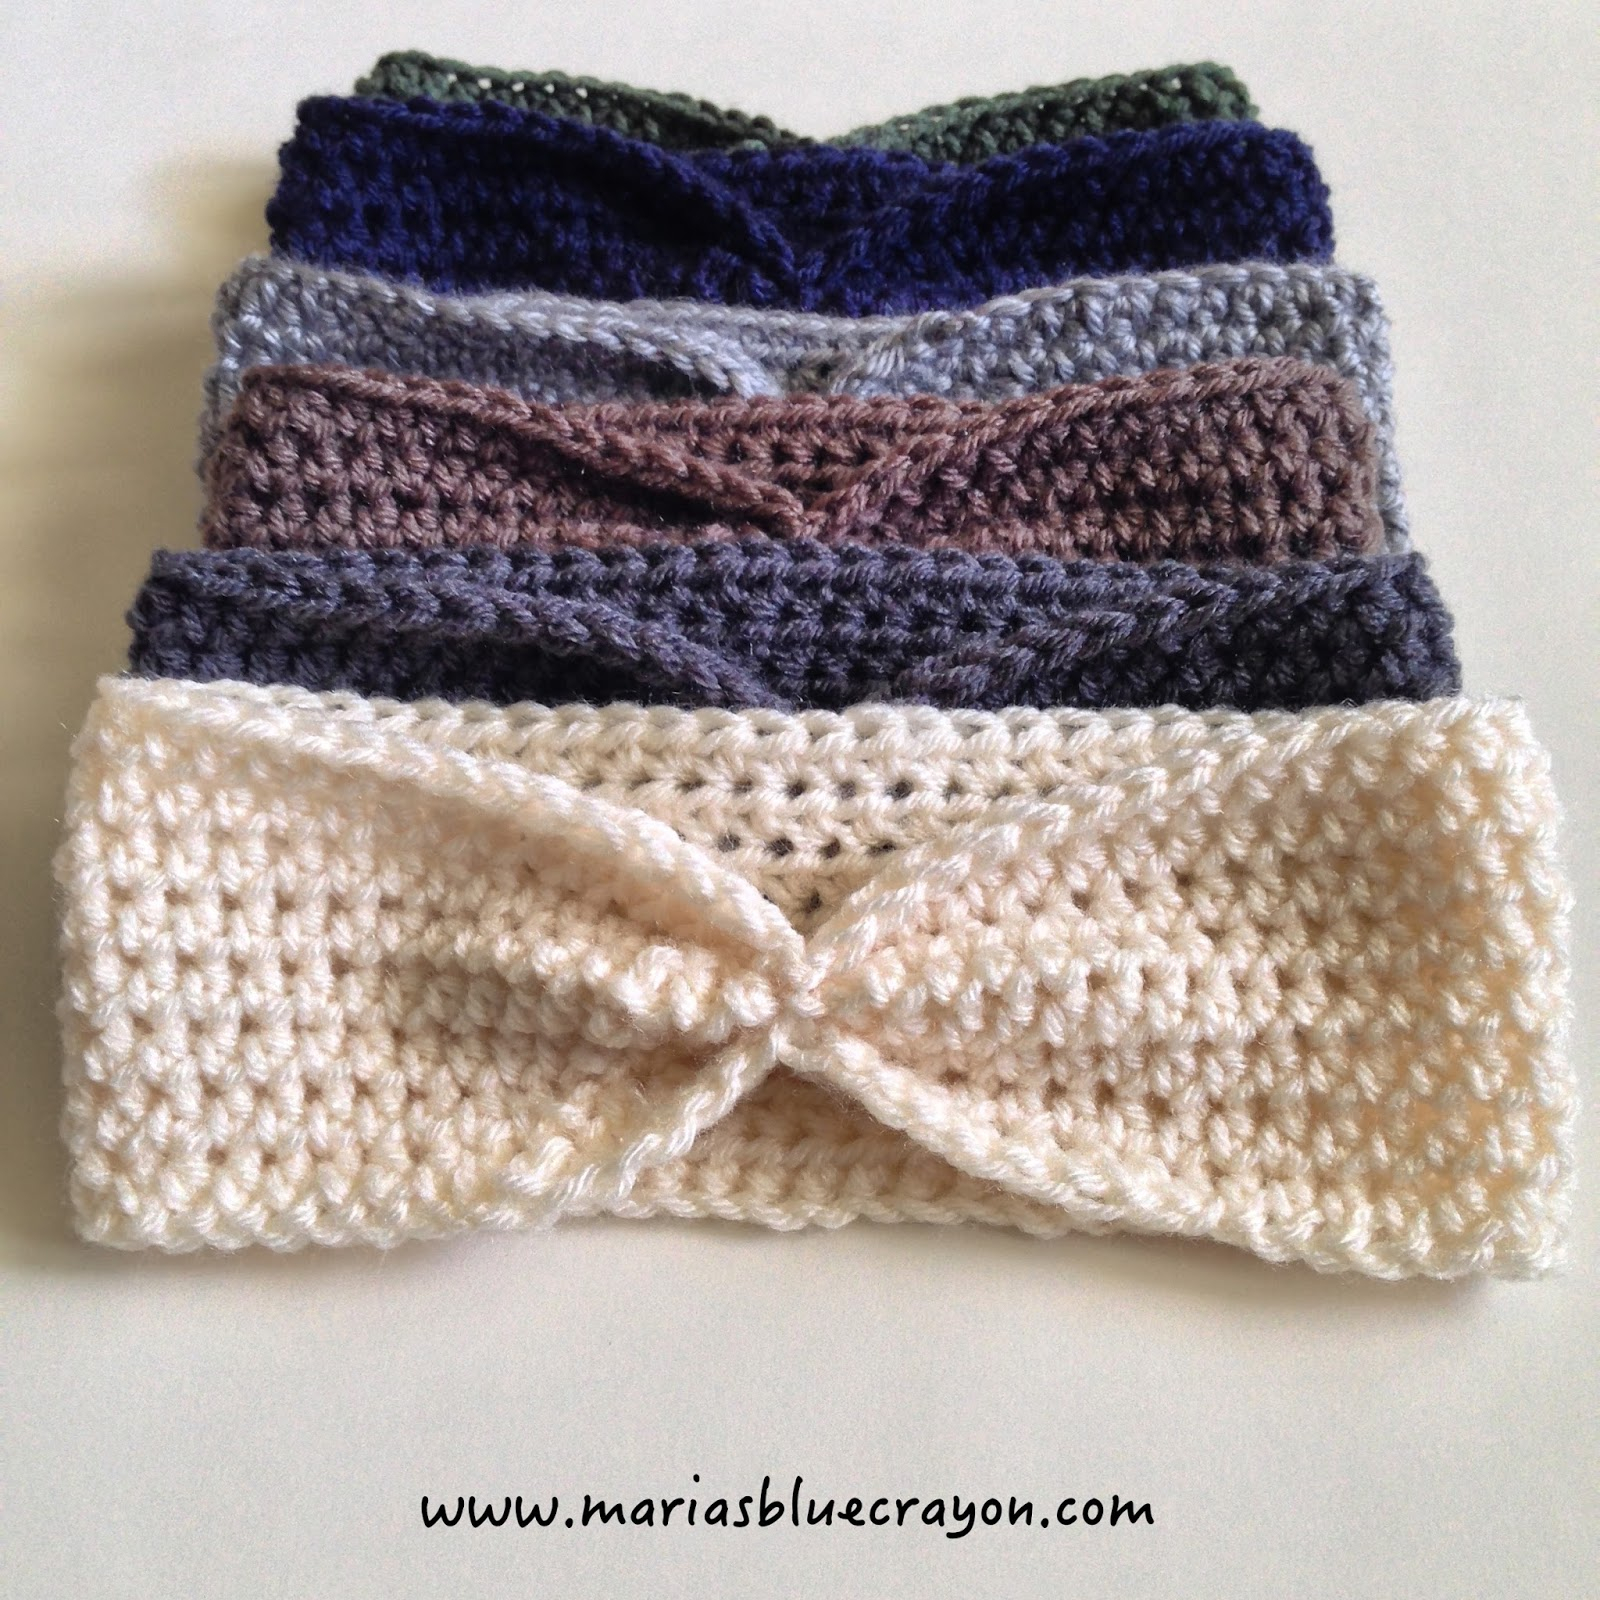 Crochet Headbands Ear Warmers Patterns Free Simple Crochet Ear Warmer Free Pattern For Beginners